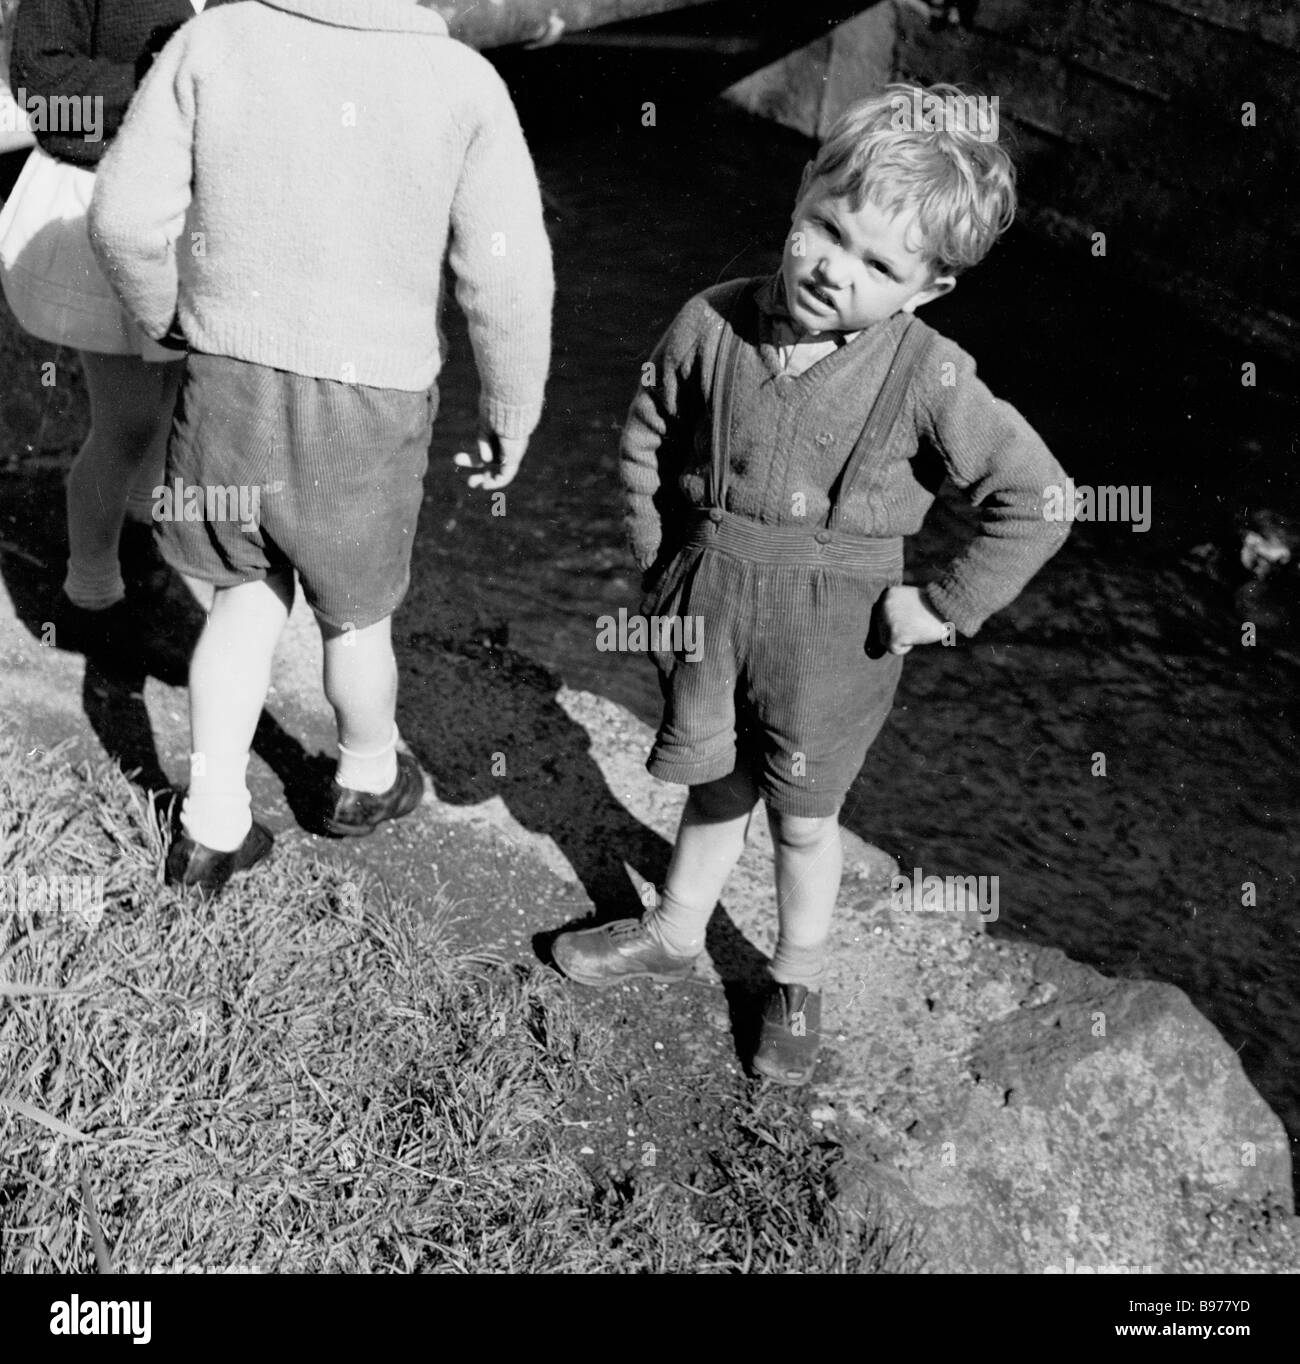 Ein kleiner irischer Junge aus den 1950er Jahren, der kurze Hosen mit Hosenträger und Händen an den Hüften trägt, besucht den Giants Causeway, Co. Antrim, Nordirland, Großbritannien. Stockfoto